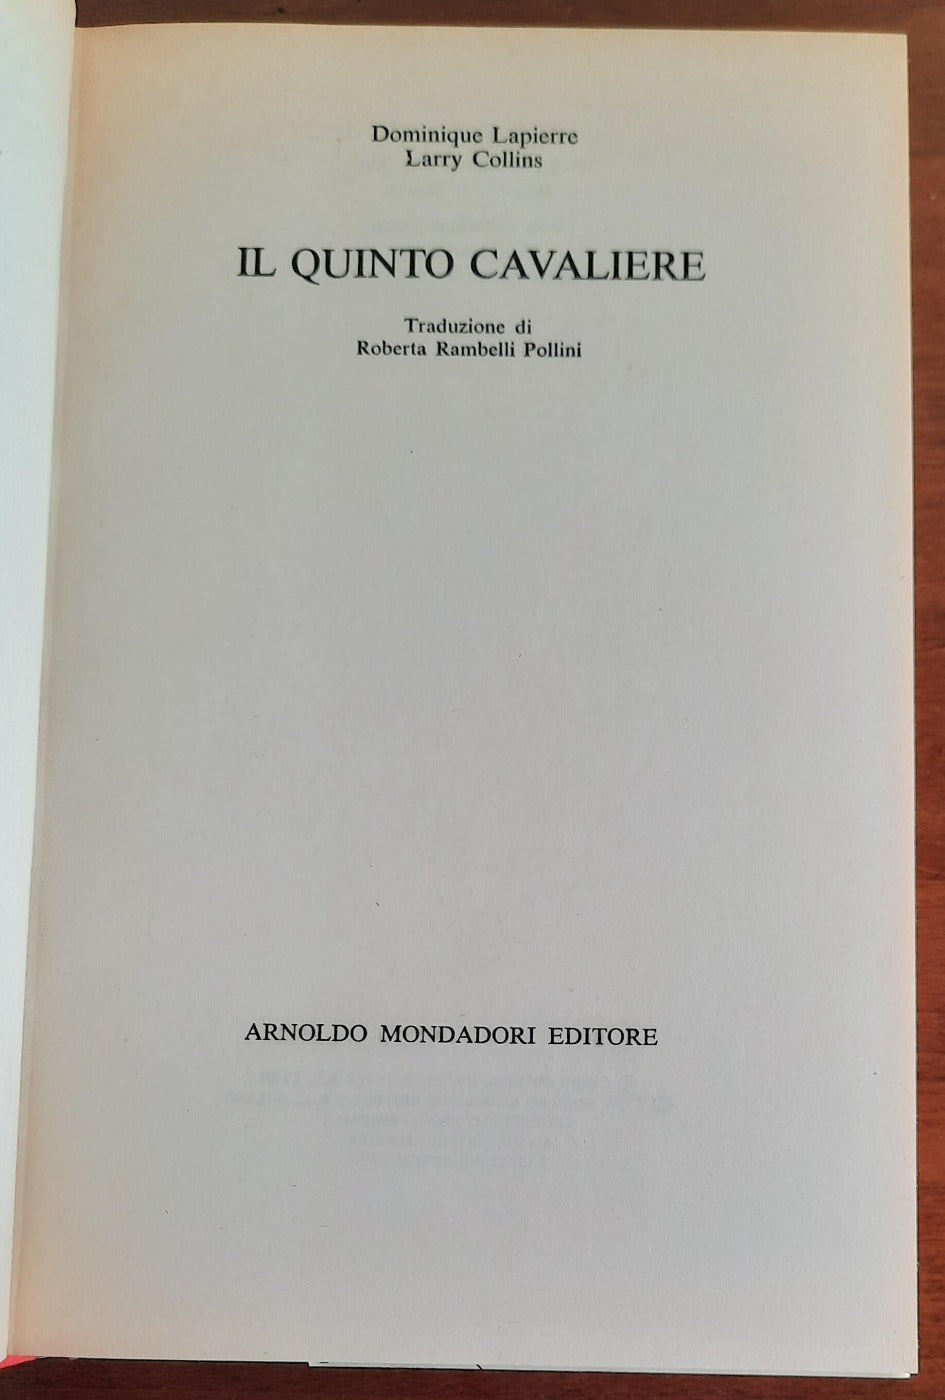 Il quinto cavaliere - Mondadori - 1980